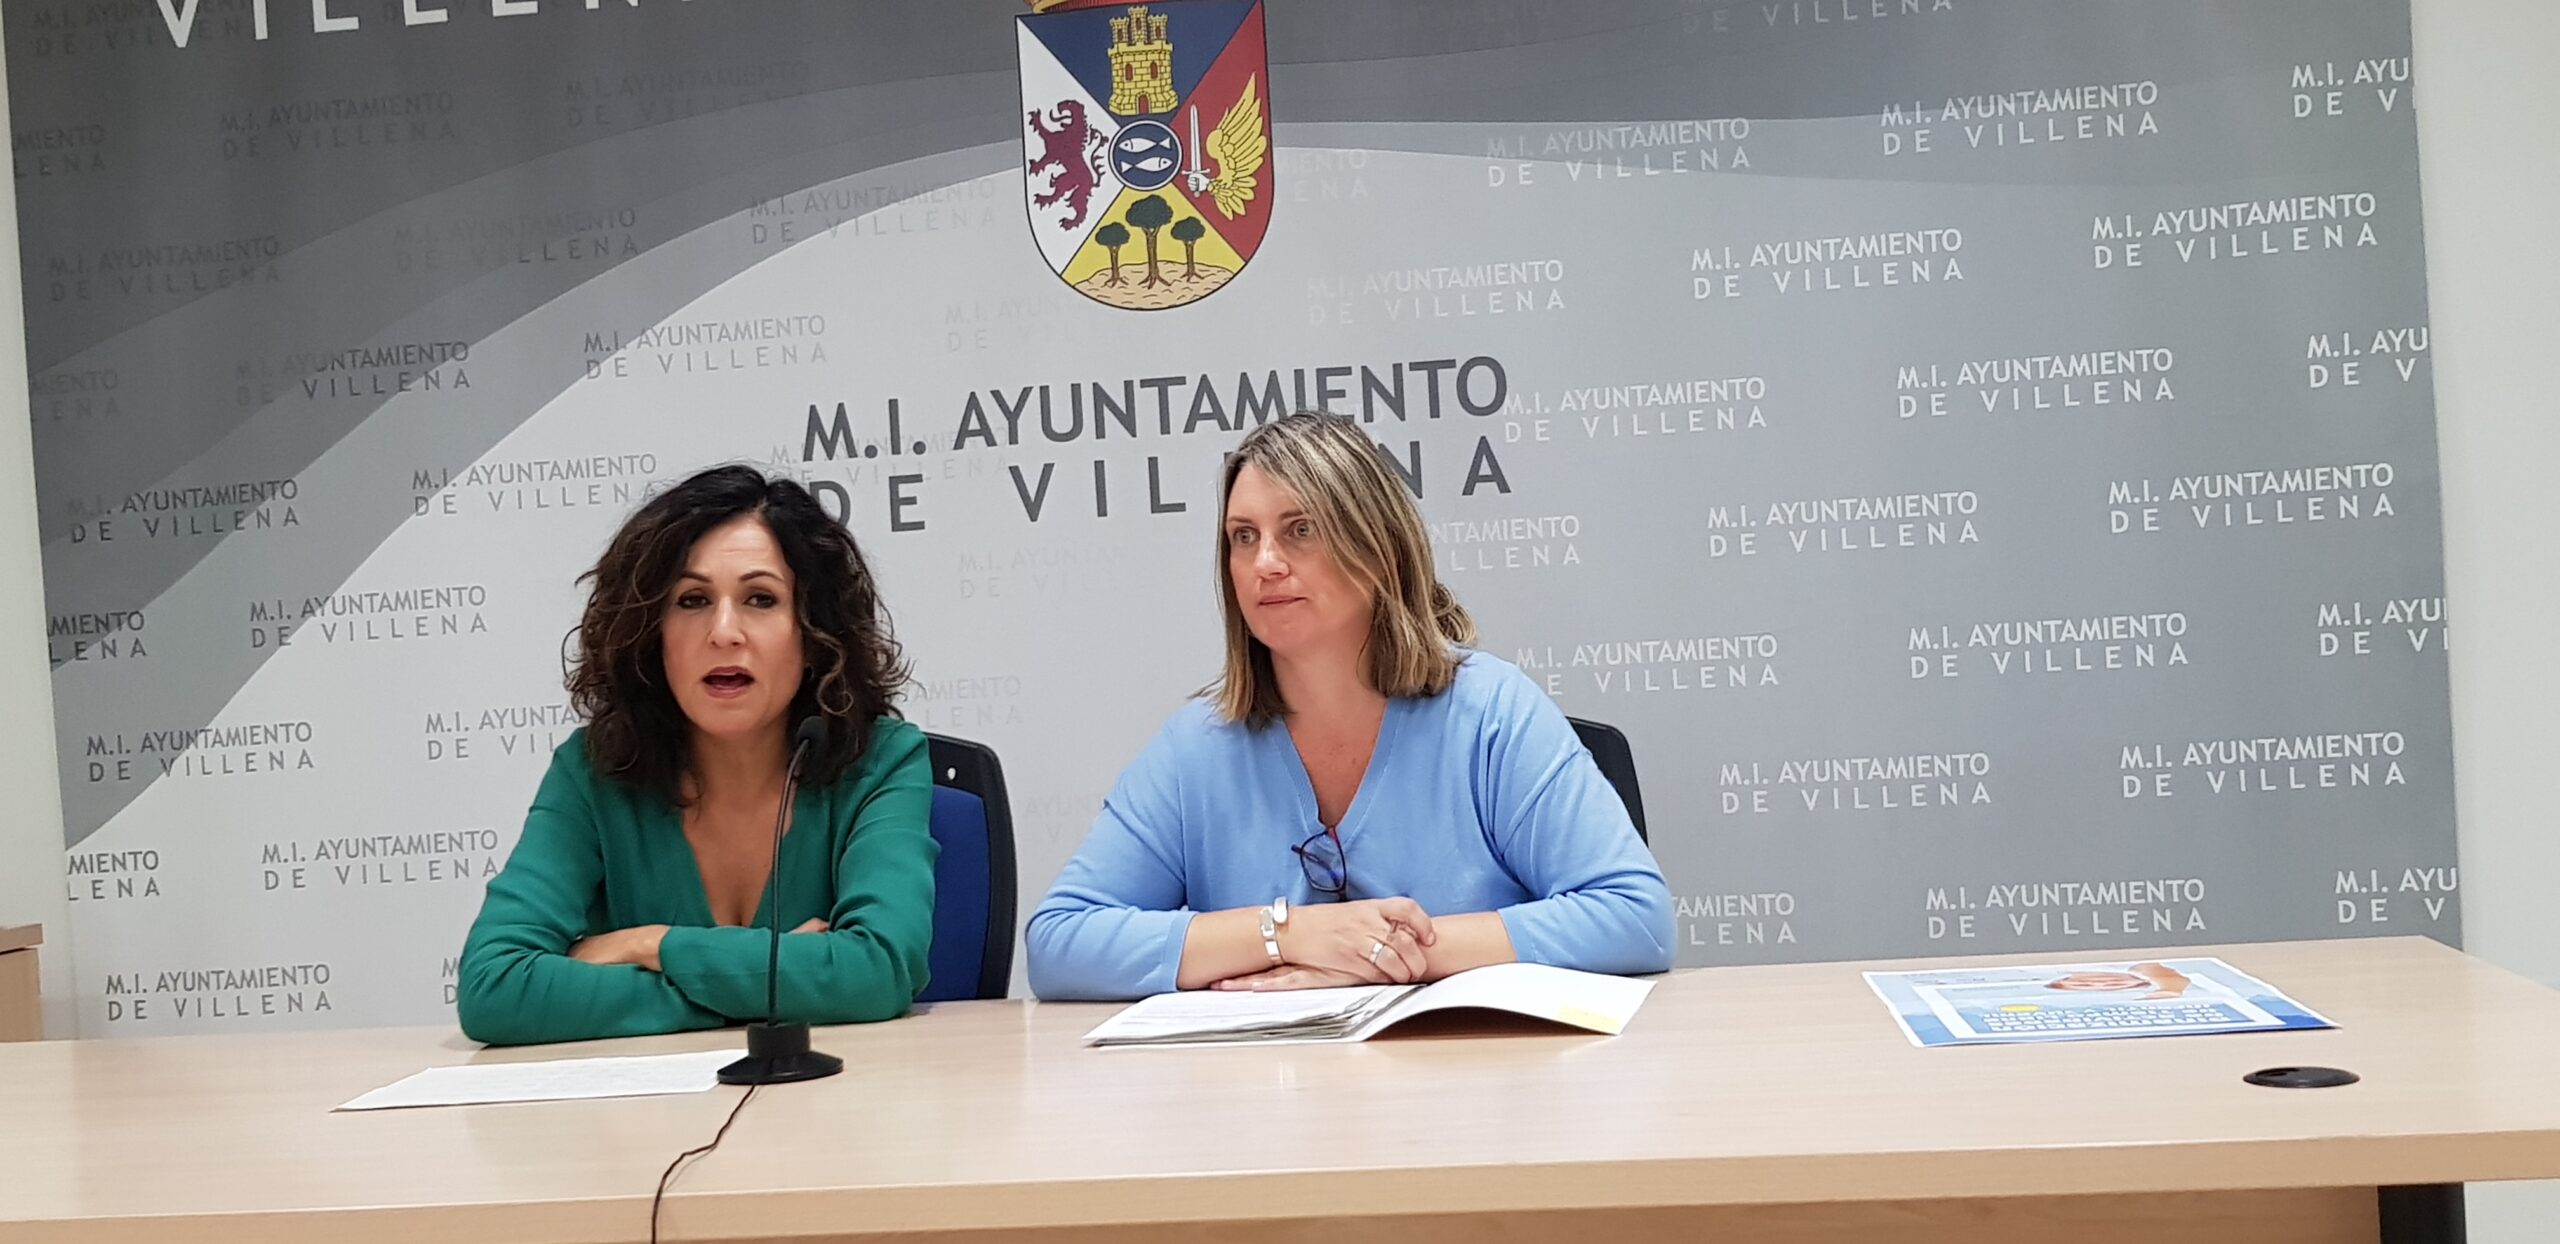 El Ayuntamiento de Villena contratará a seis personas gracias a una ayuda de 100.000 euros de la Generalitat